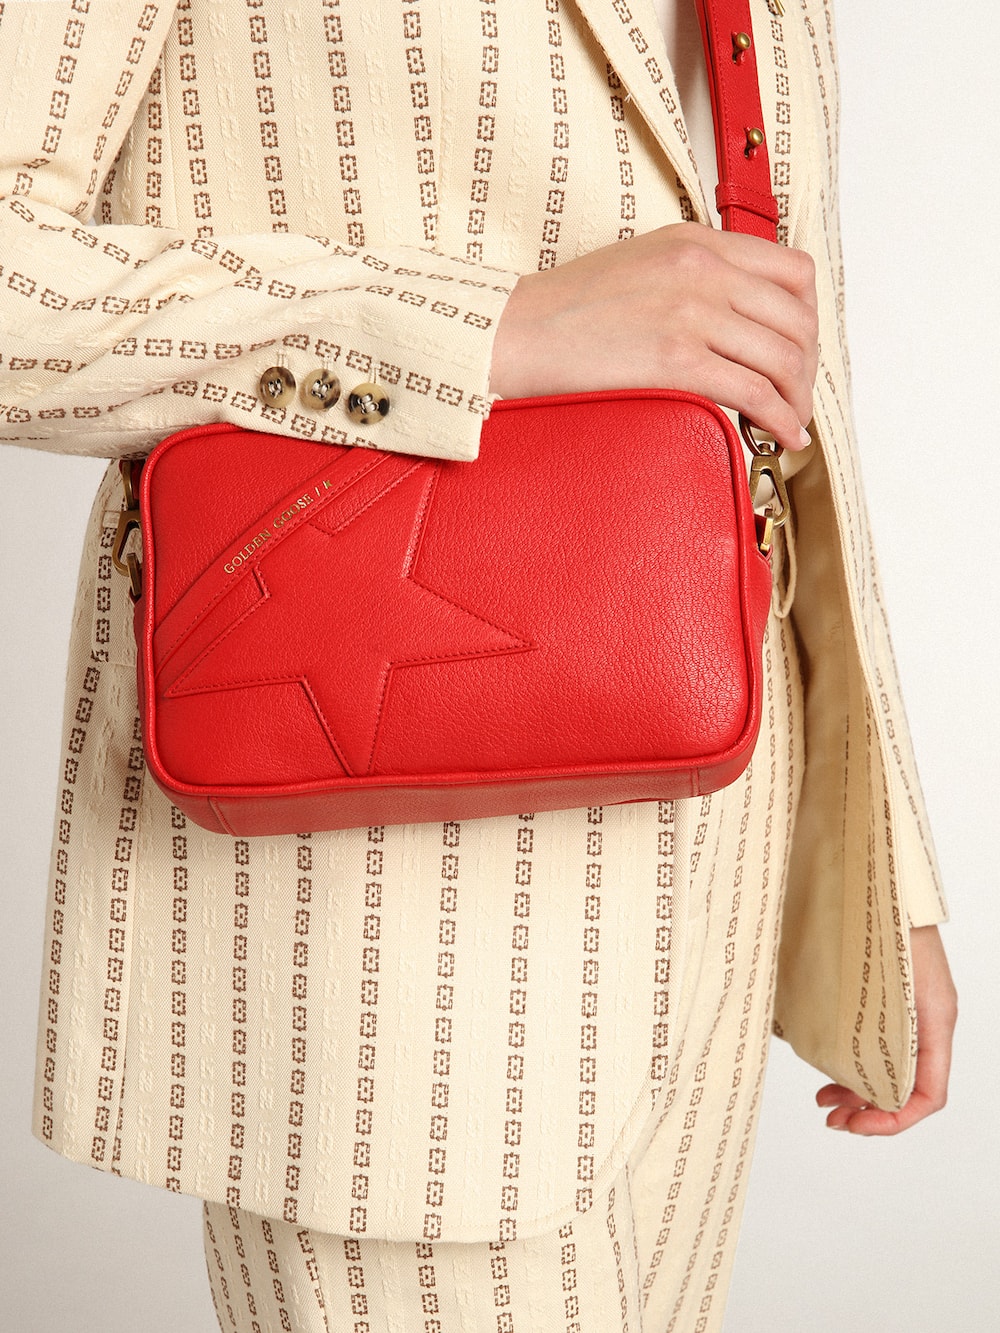 Golden Goose - Star Bag de mujer de piel color rojo vivo in 